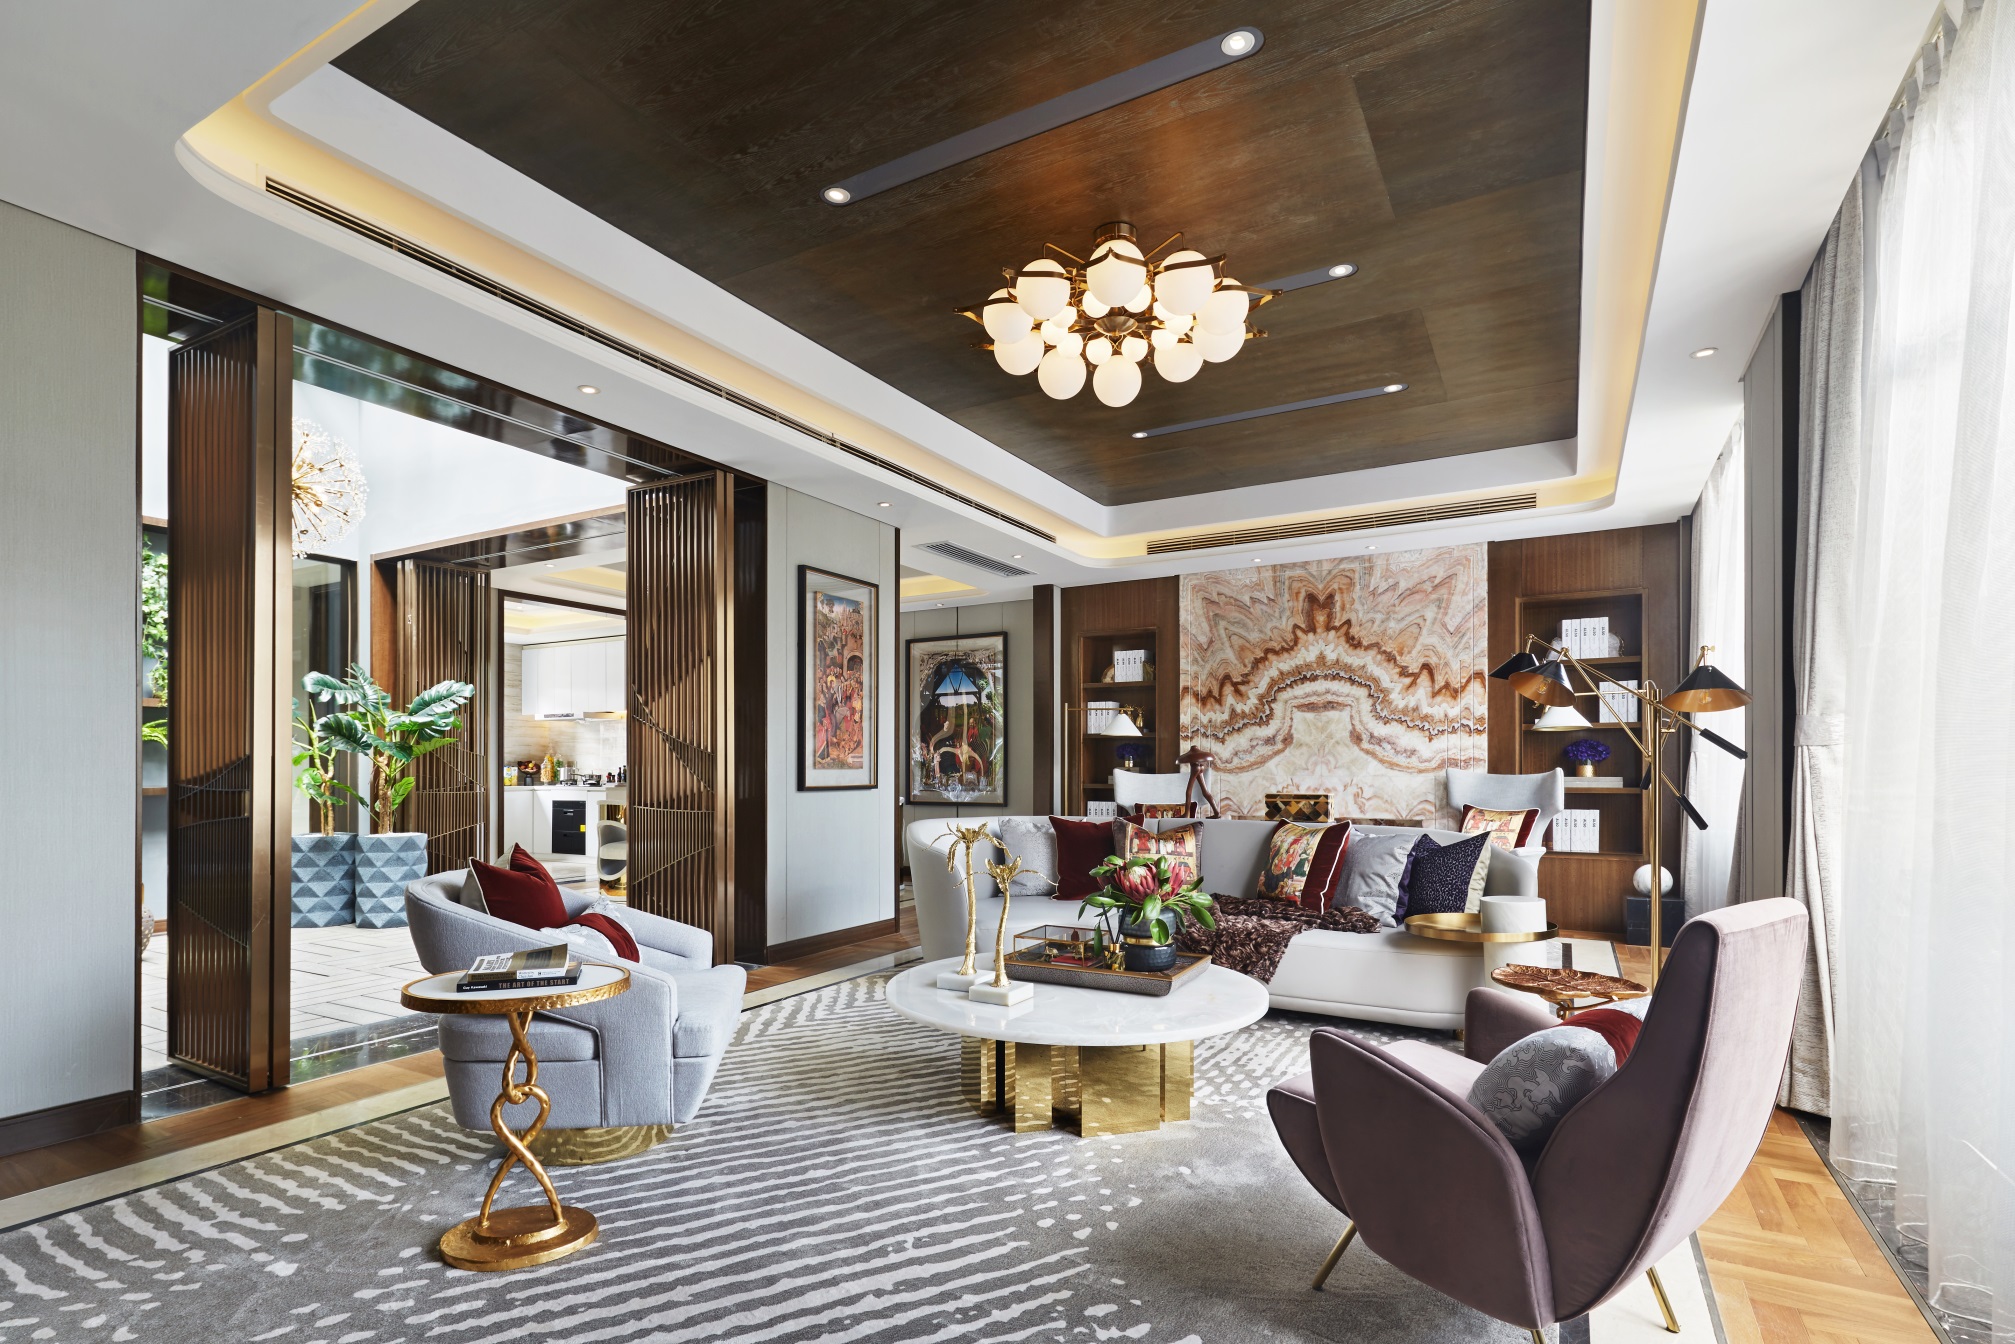 客厅空间中充斥着生活的华丽感，吊顶将木制与金属相互结合，软装把空间进一步细化。